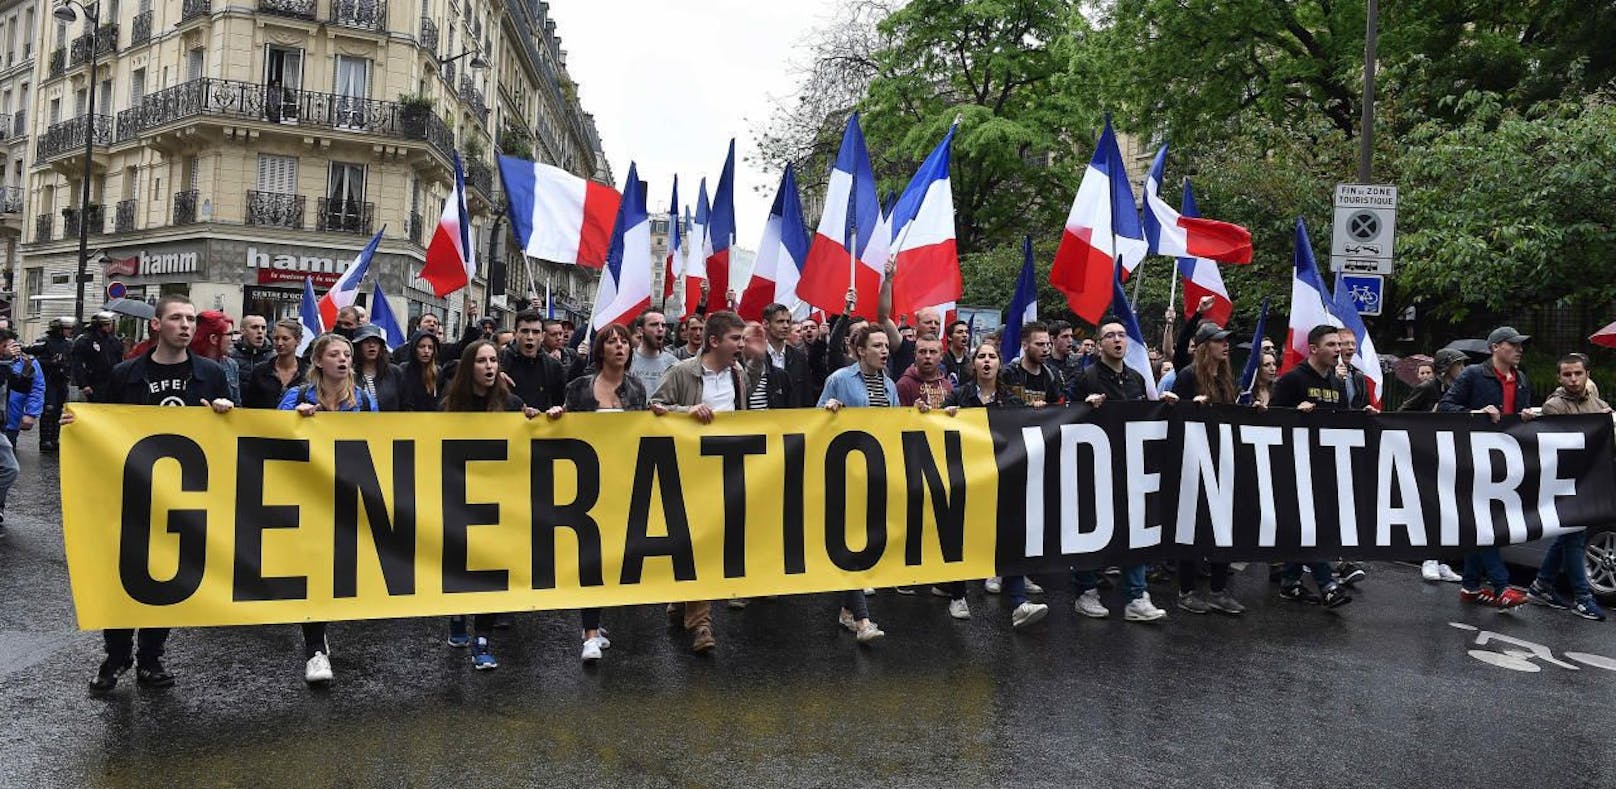 Eine Demo der französischen Identitären in Paris im Mai 2016.